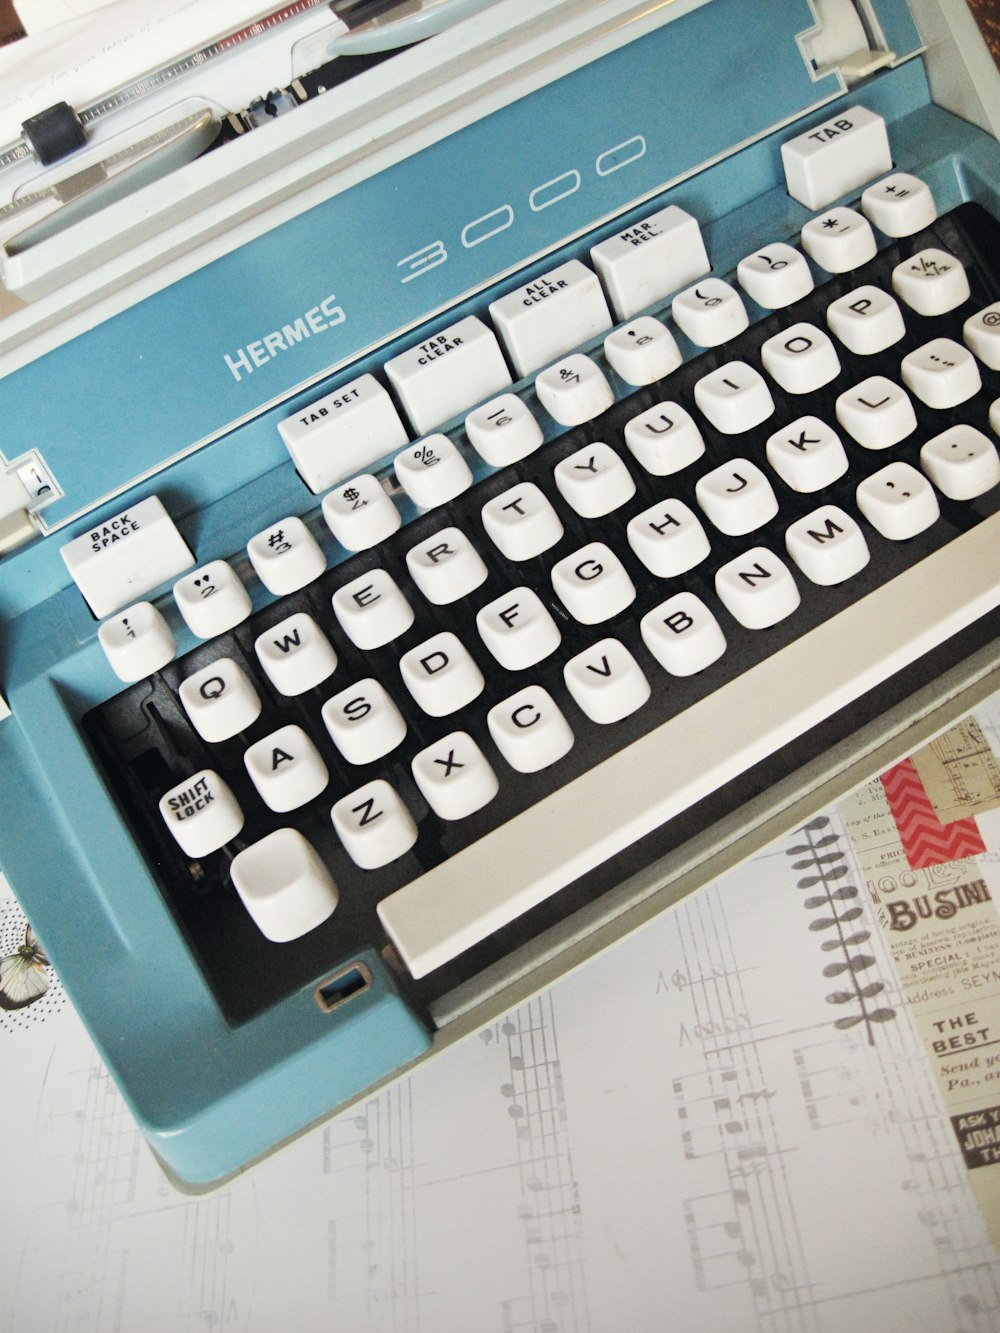 máquina de escrever Hermes 3000 branca e azulada sobre papel branco